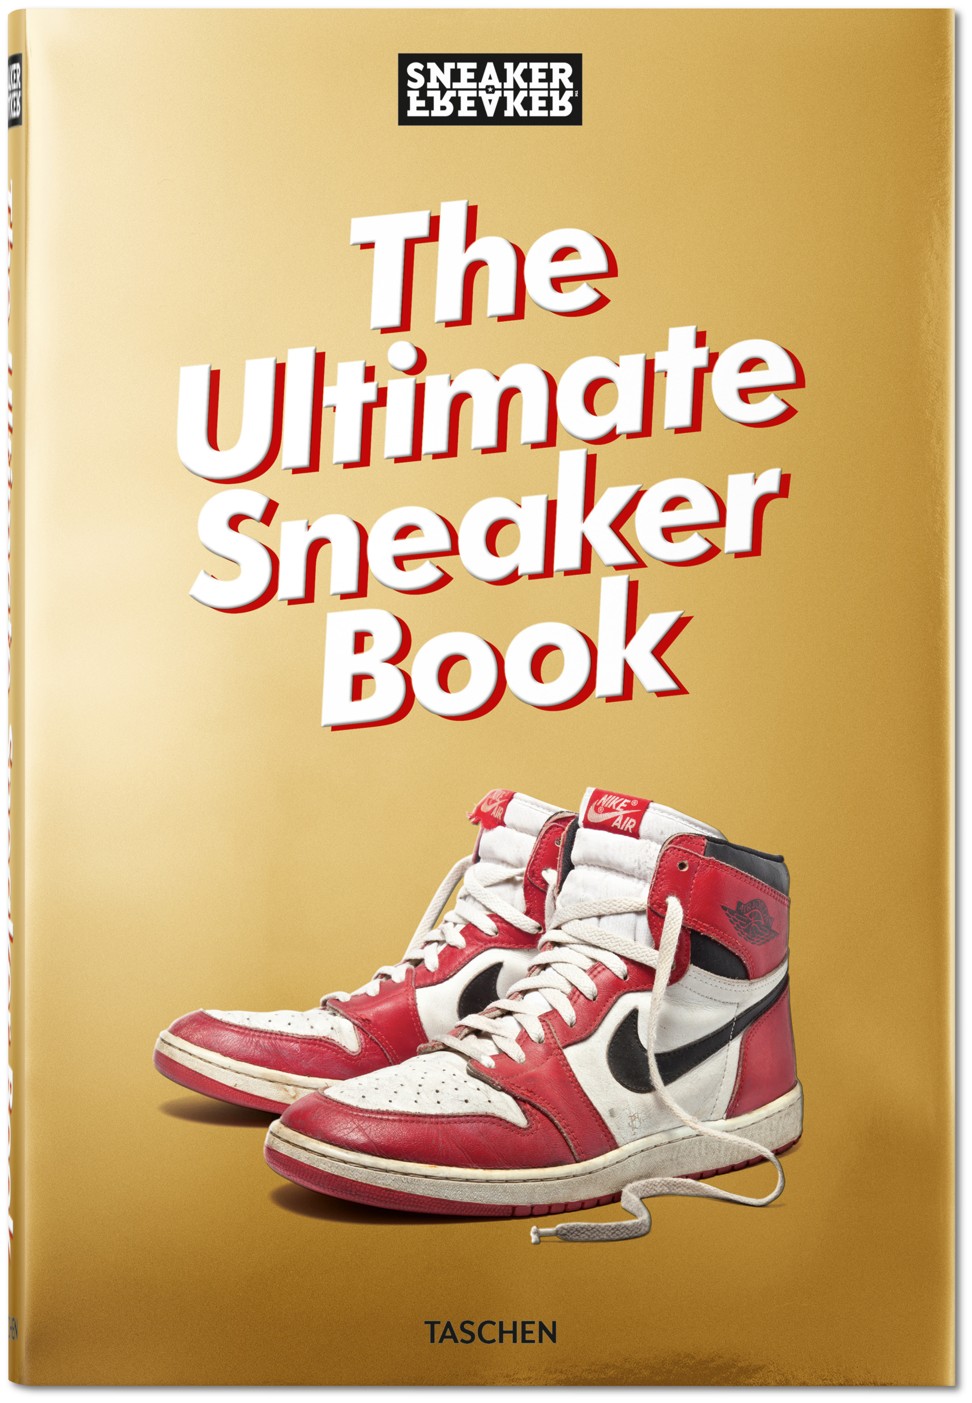 The cover of Sneaker Freaker. Photo: Taschen